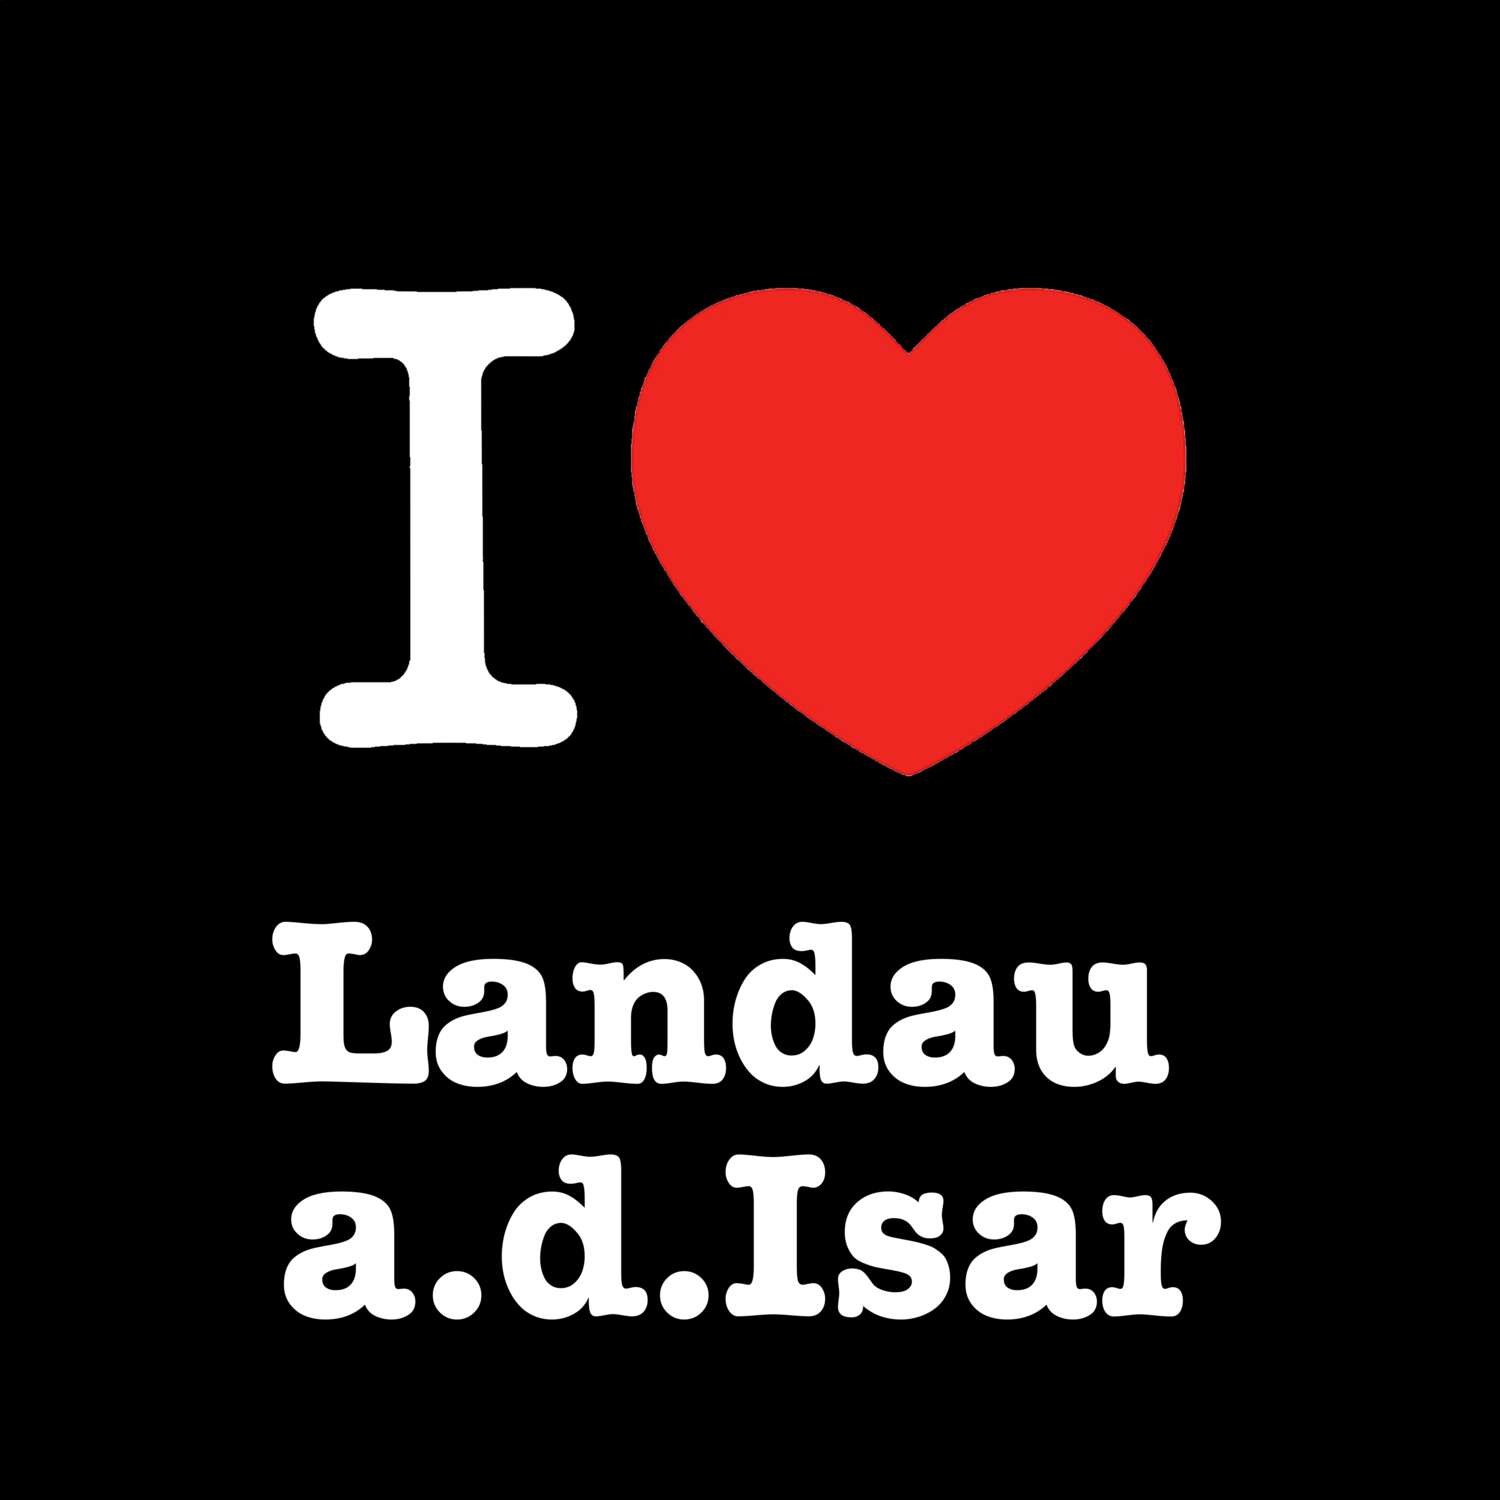 Landau a.d.Isar T-Shirt »I love«